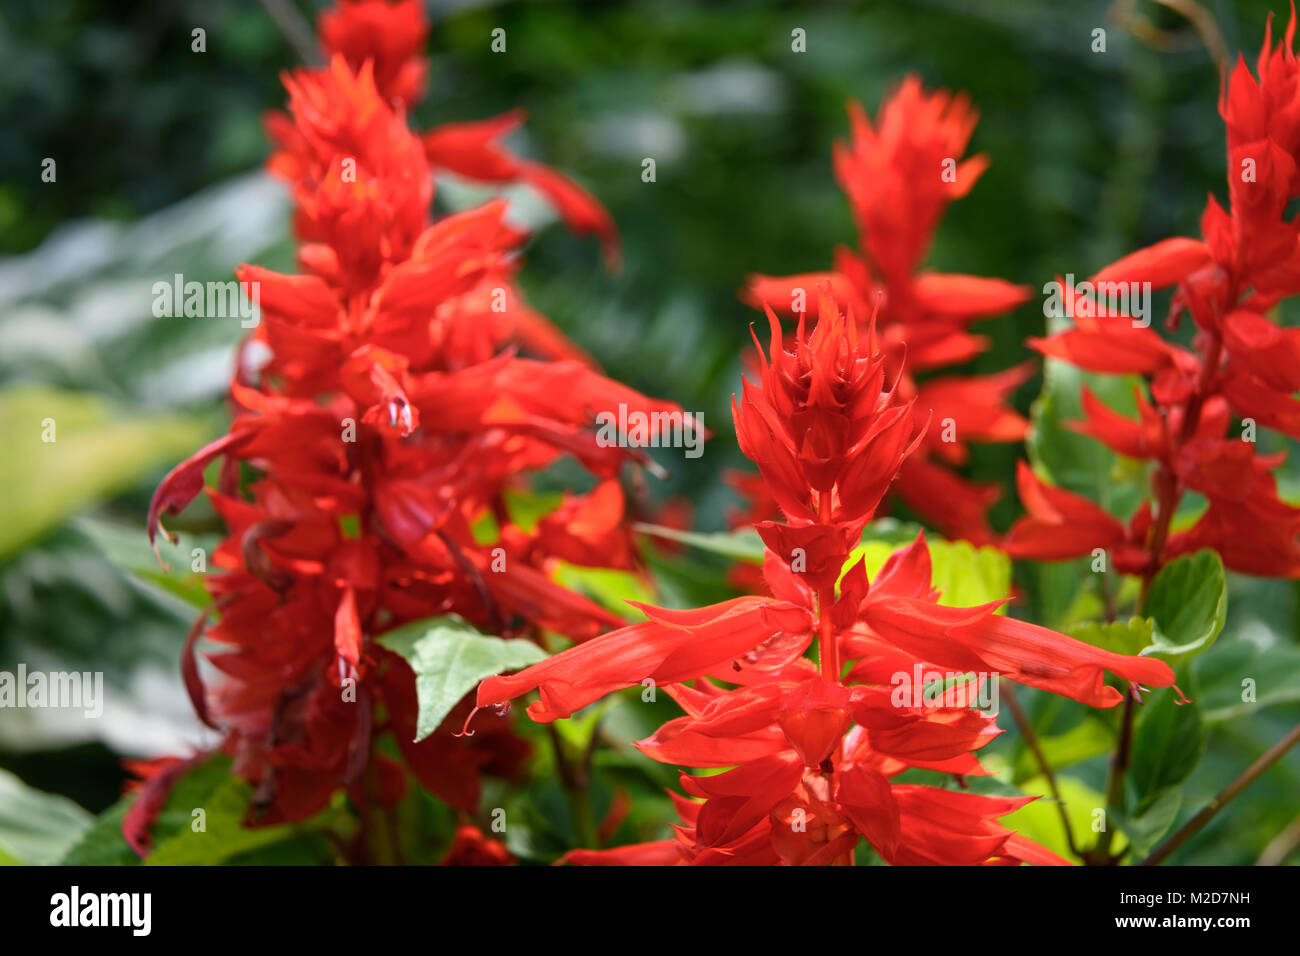 Red Salvia splendens flowers in the garden Stock Photo